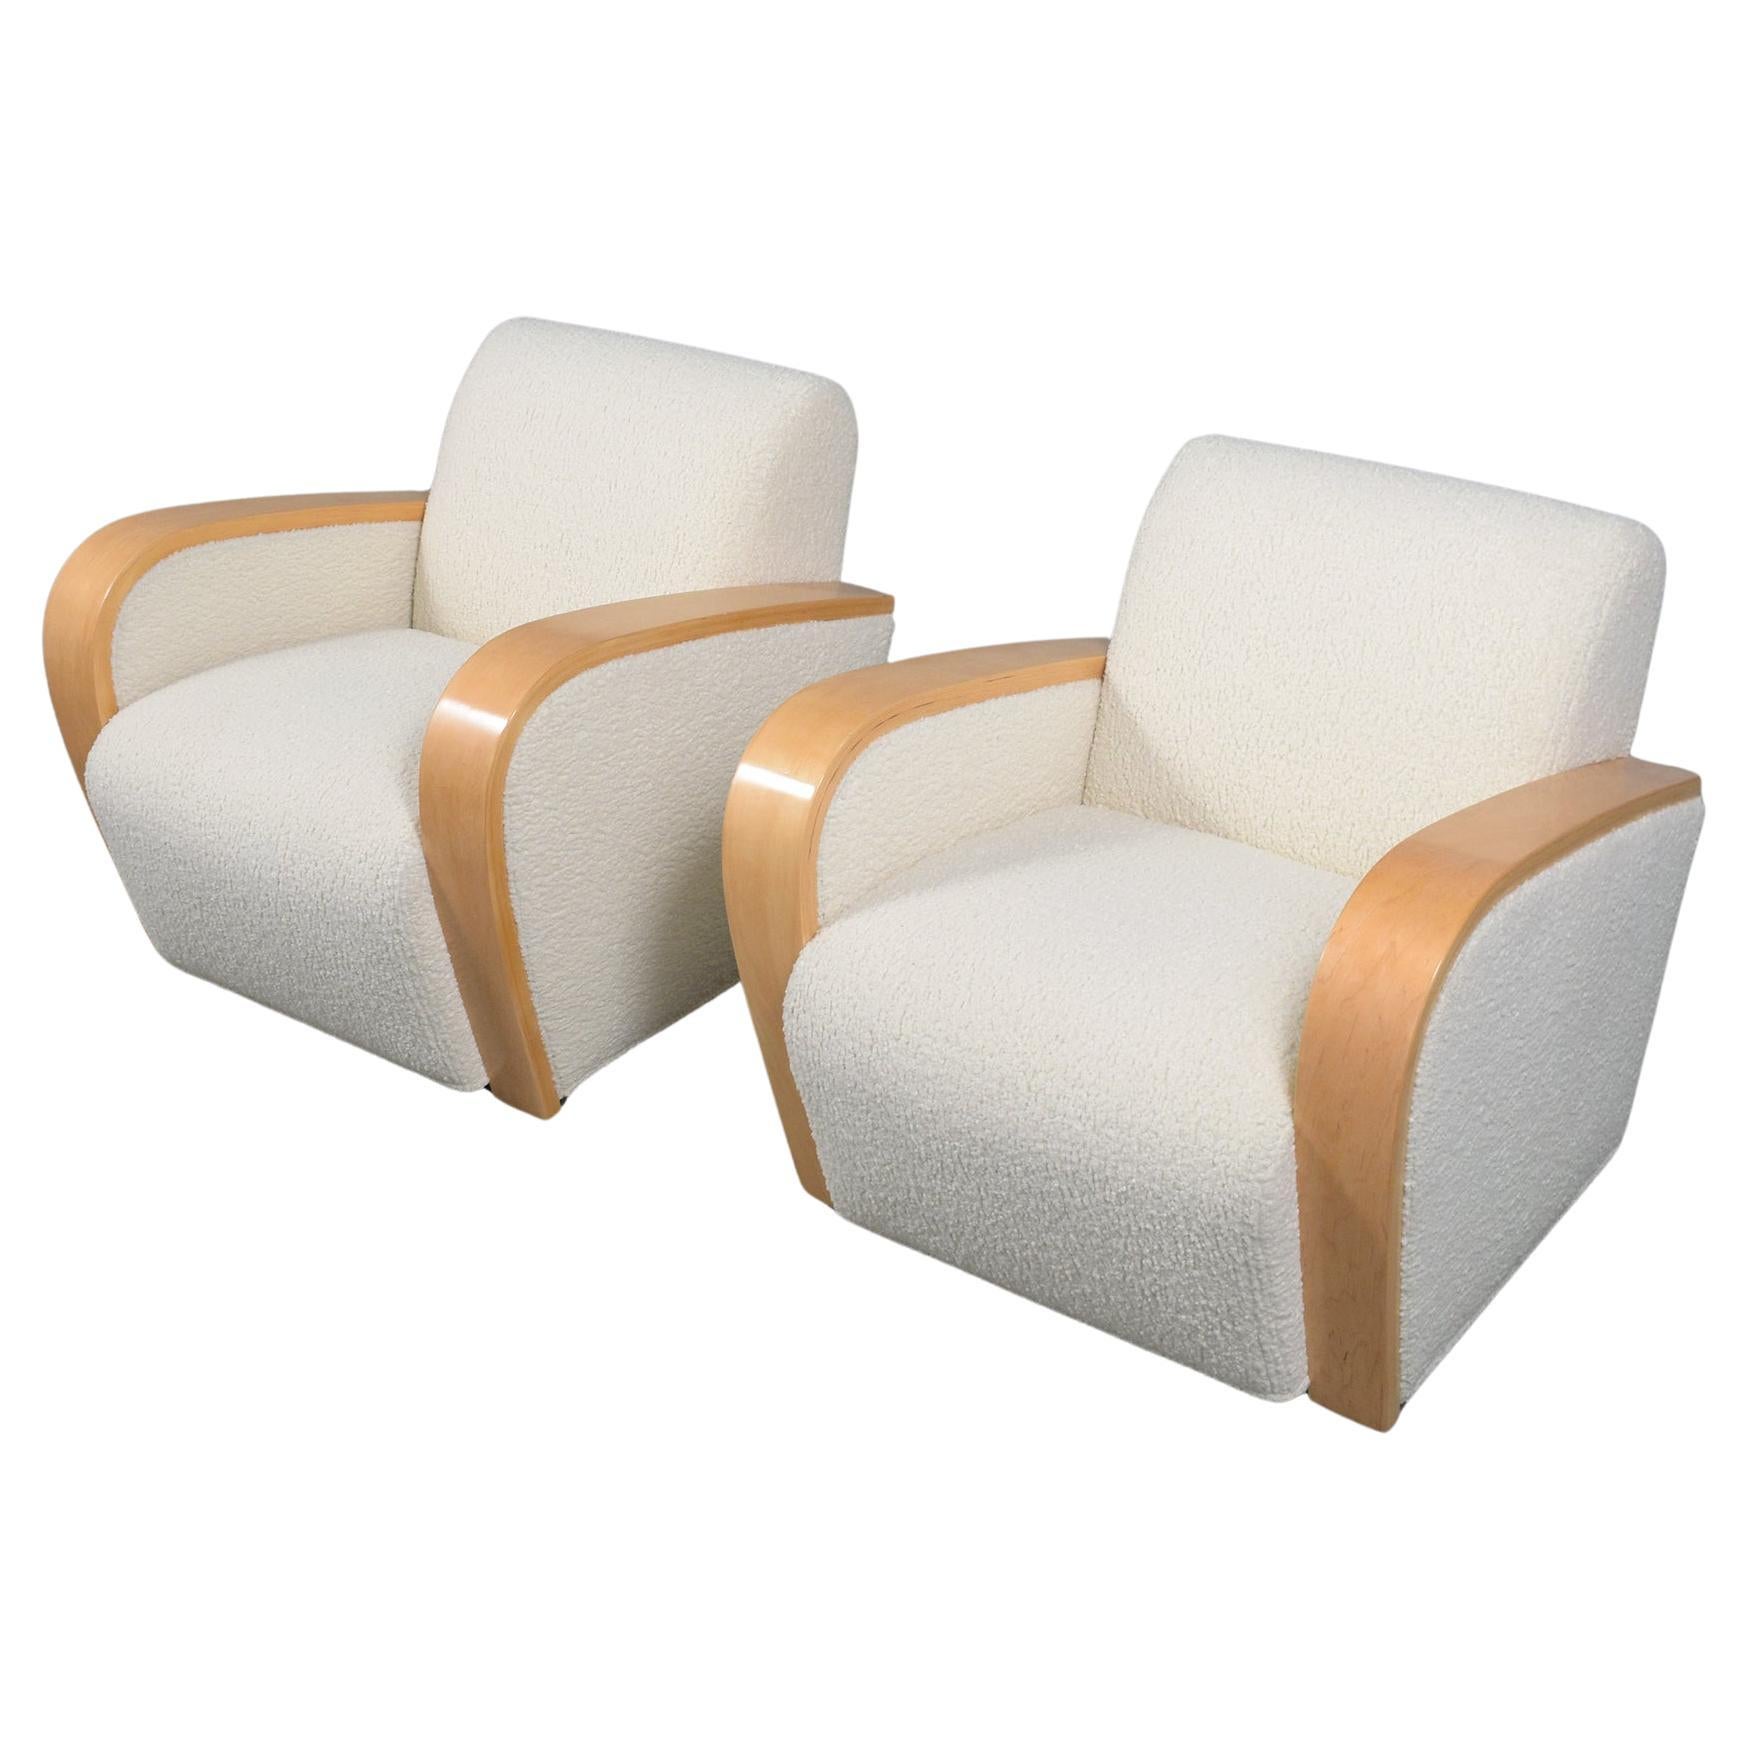 Vintage Mid-Century Modern Lounge Chairs: Restaurierte Eleganz und Komfort